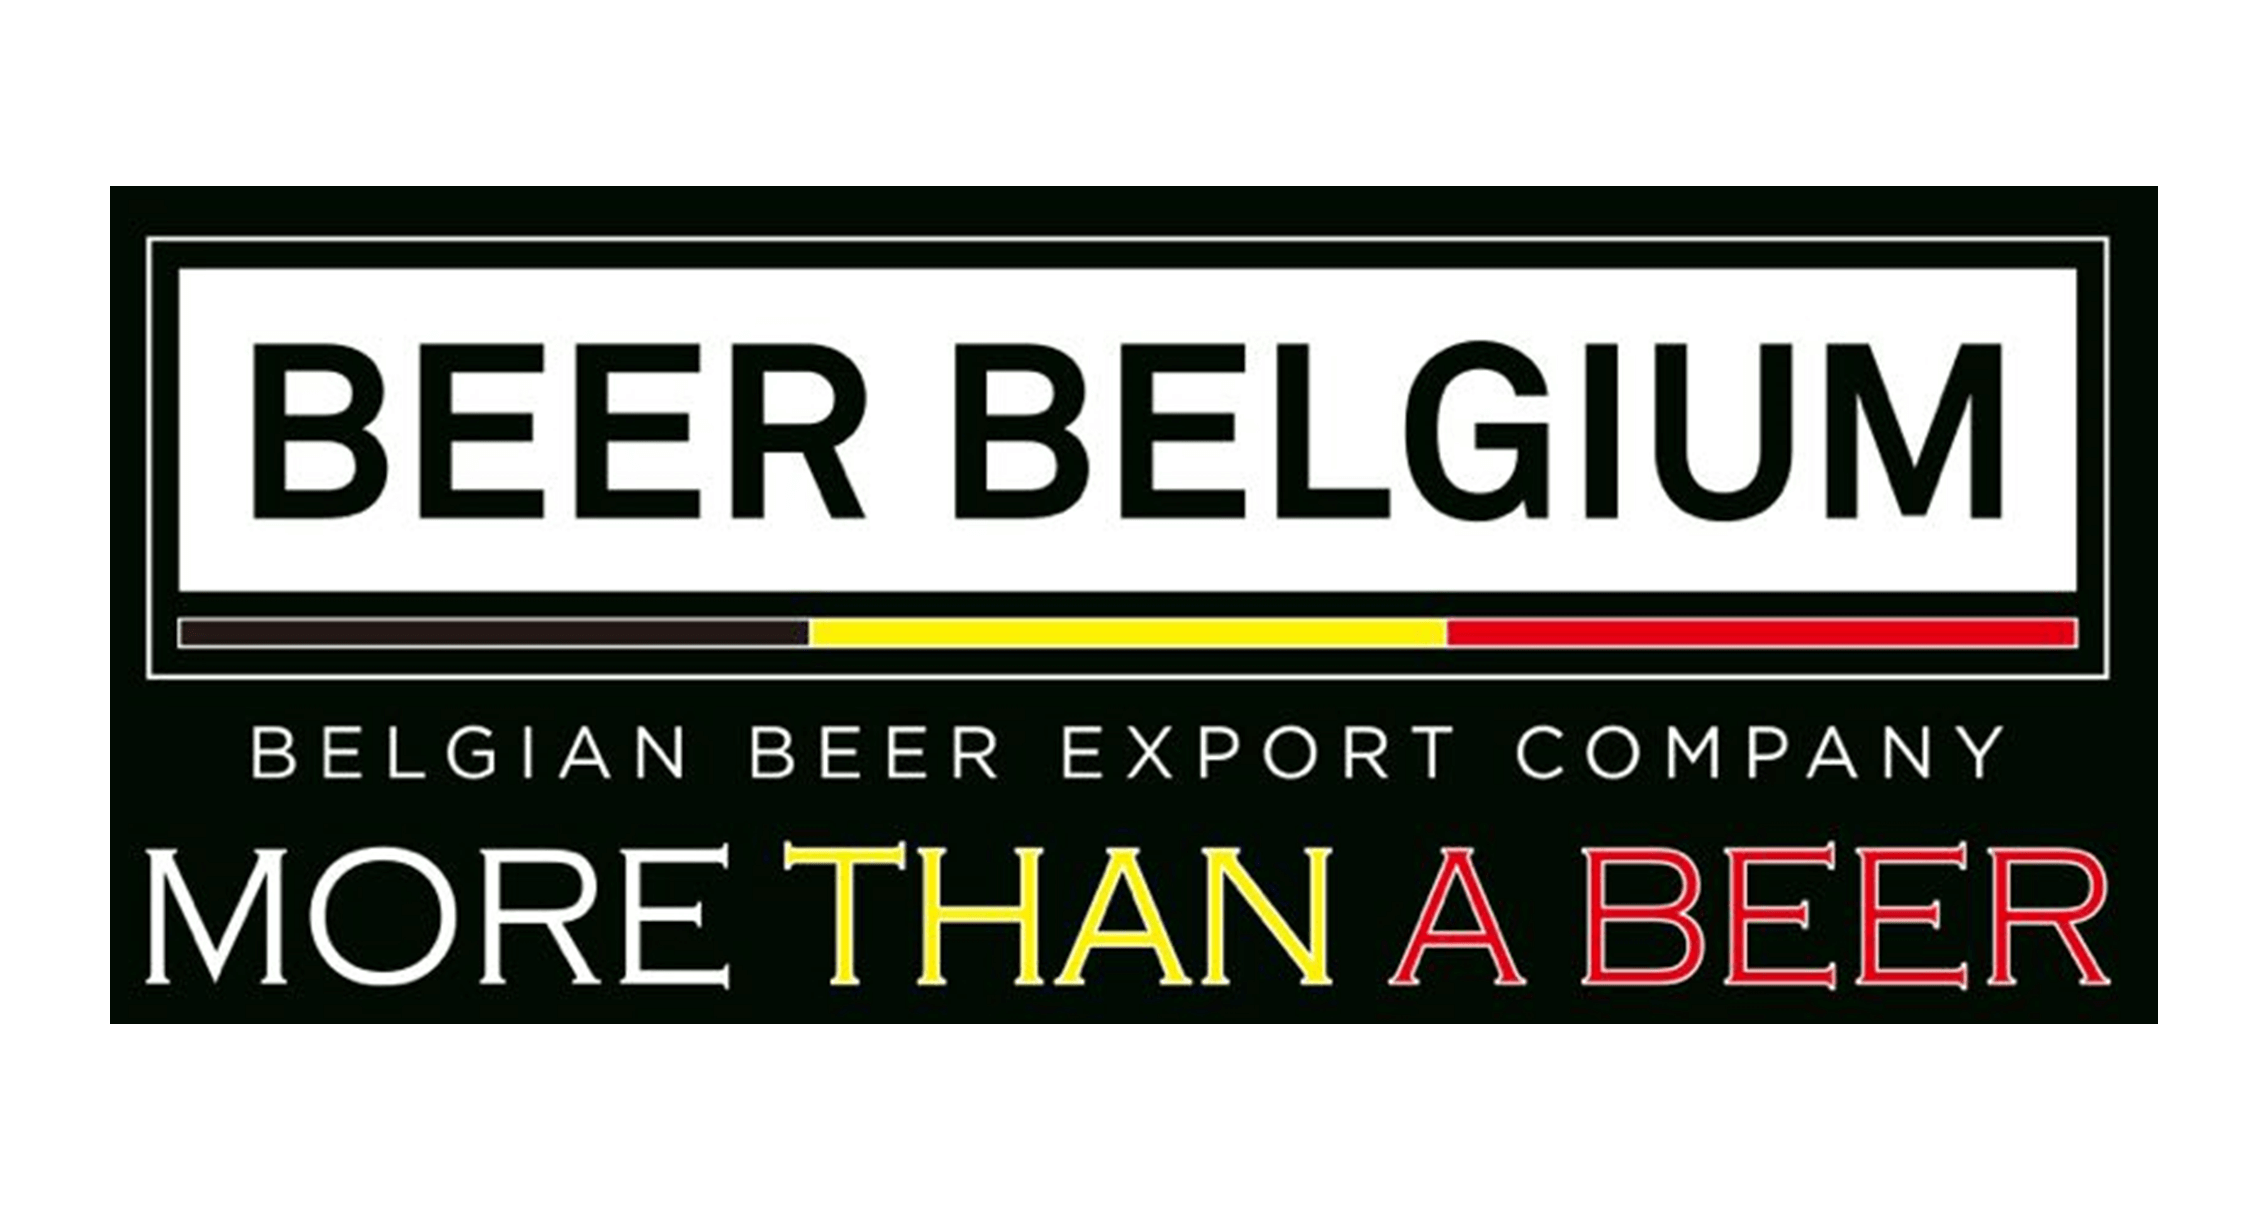 Beer Belgium